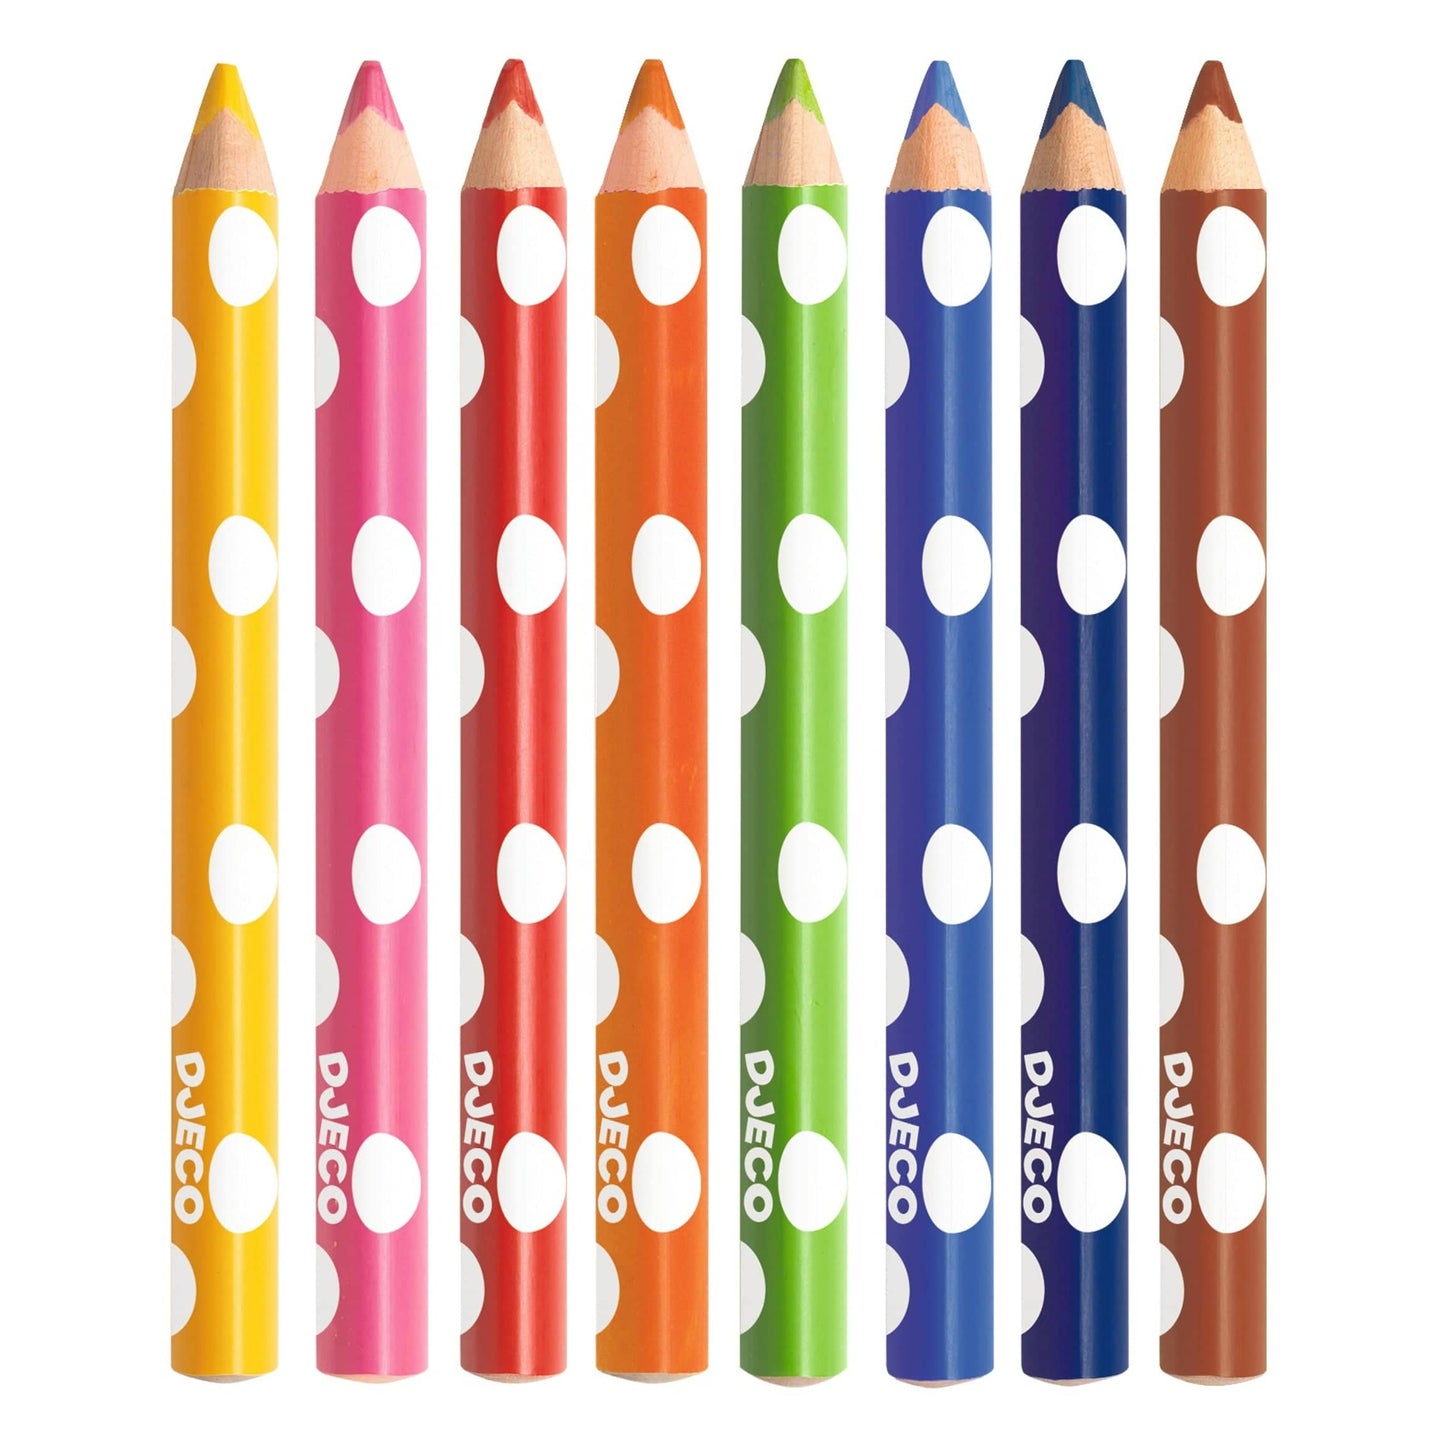 Design By Djeco Arte y Manualidades 8 lápices de colores para niños pequeños DJ09004